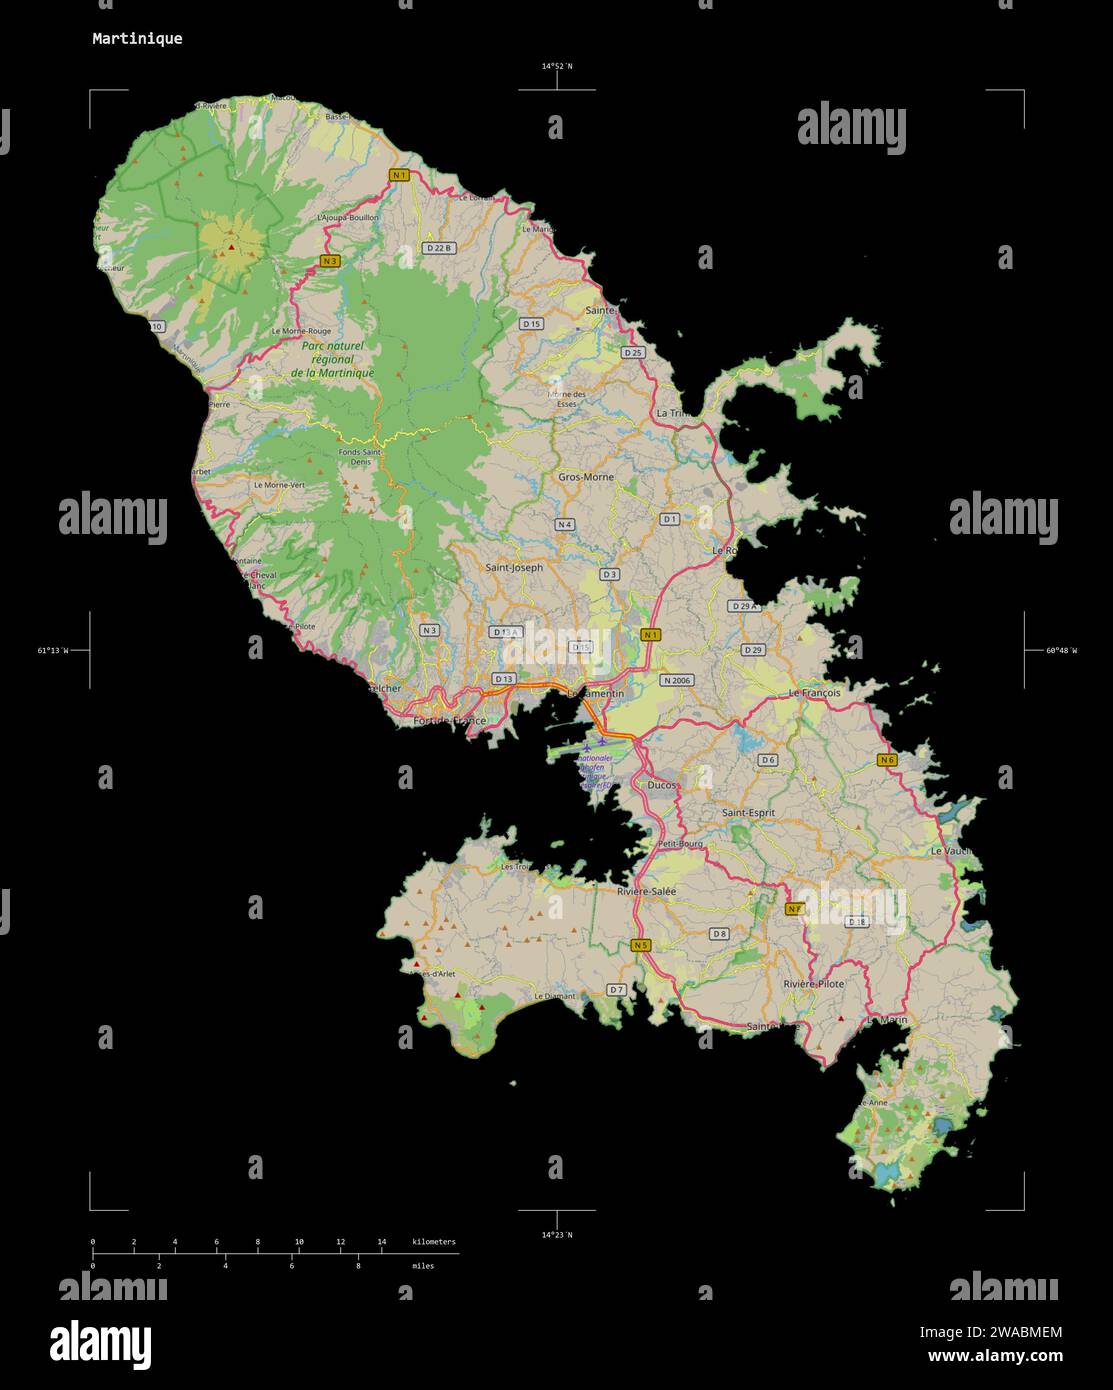 Forme d'une carte topographique, de style OSM Allemagne de la Martinique, avec l'échelle de distance et les coordonnées de la frontière de la carte, isolée sur noir Banque D'Images